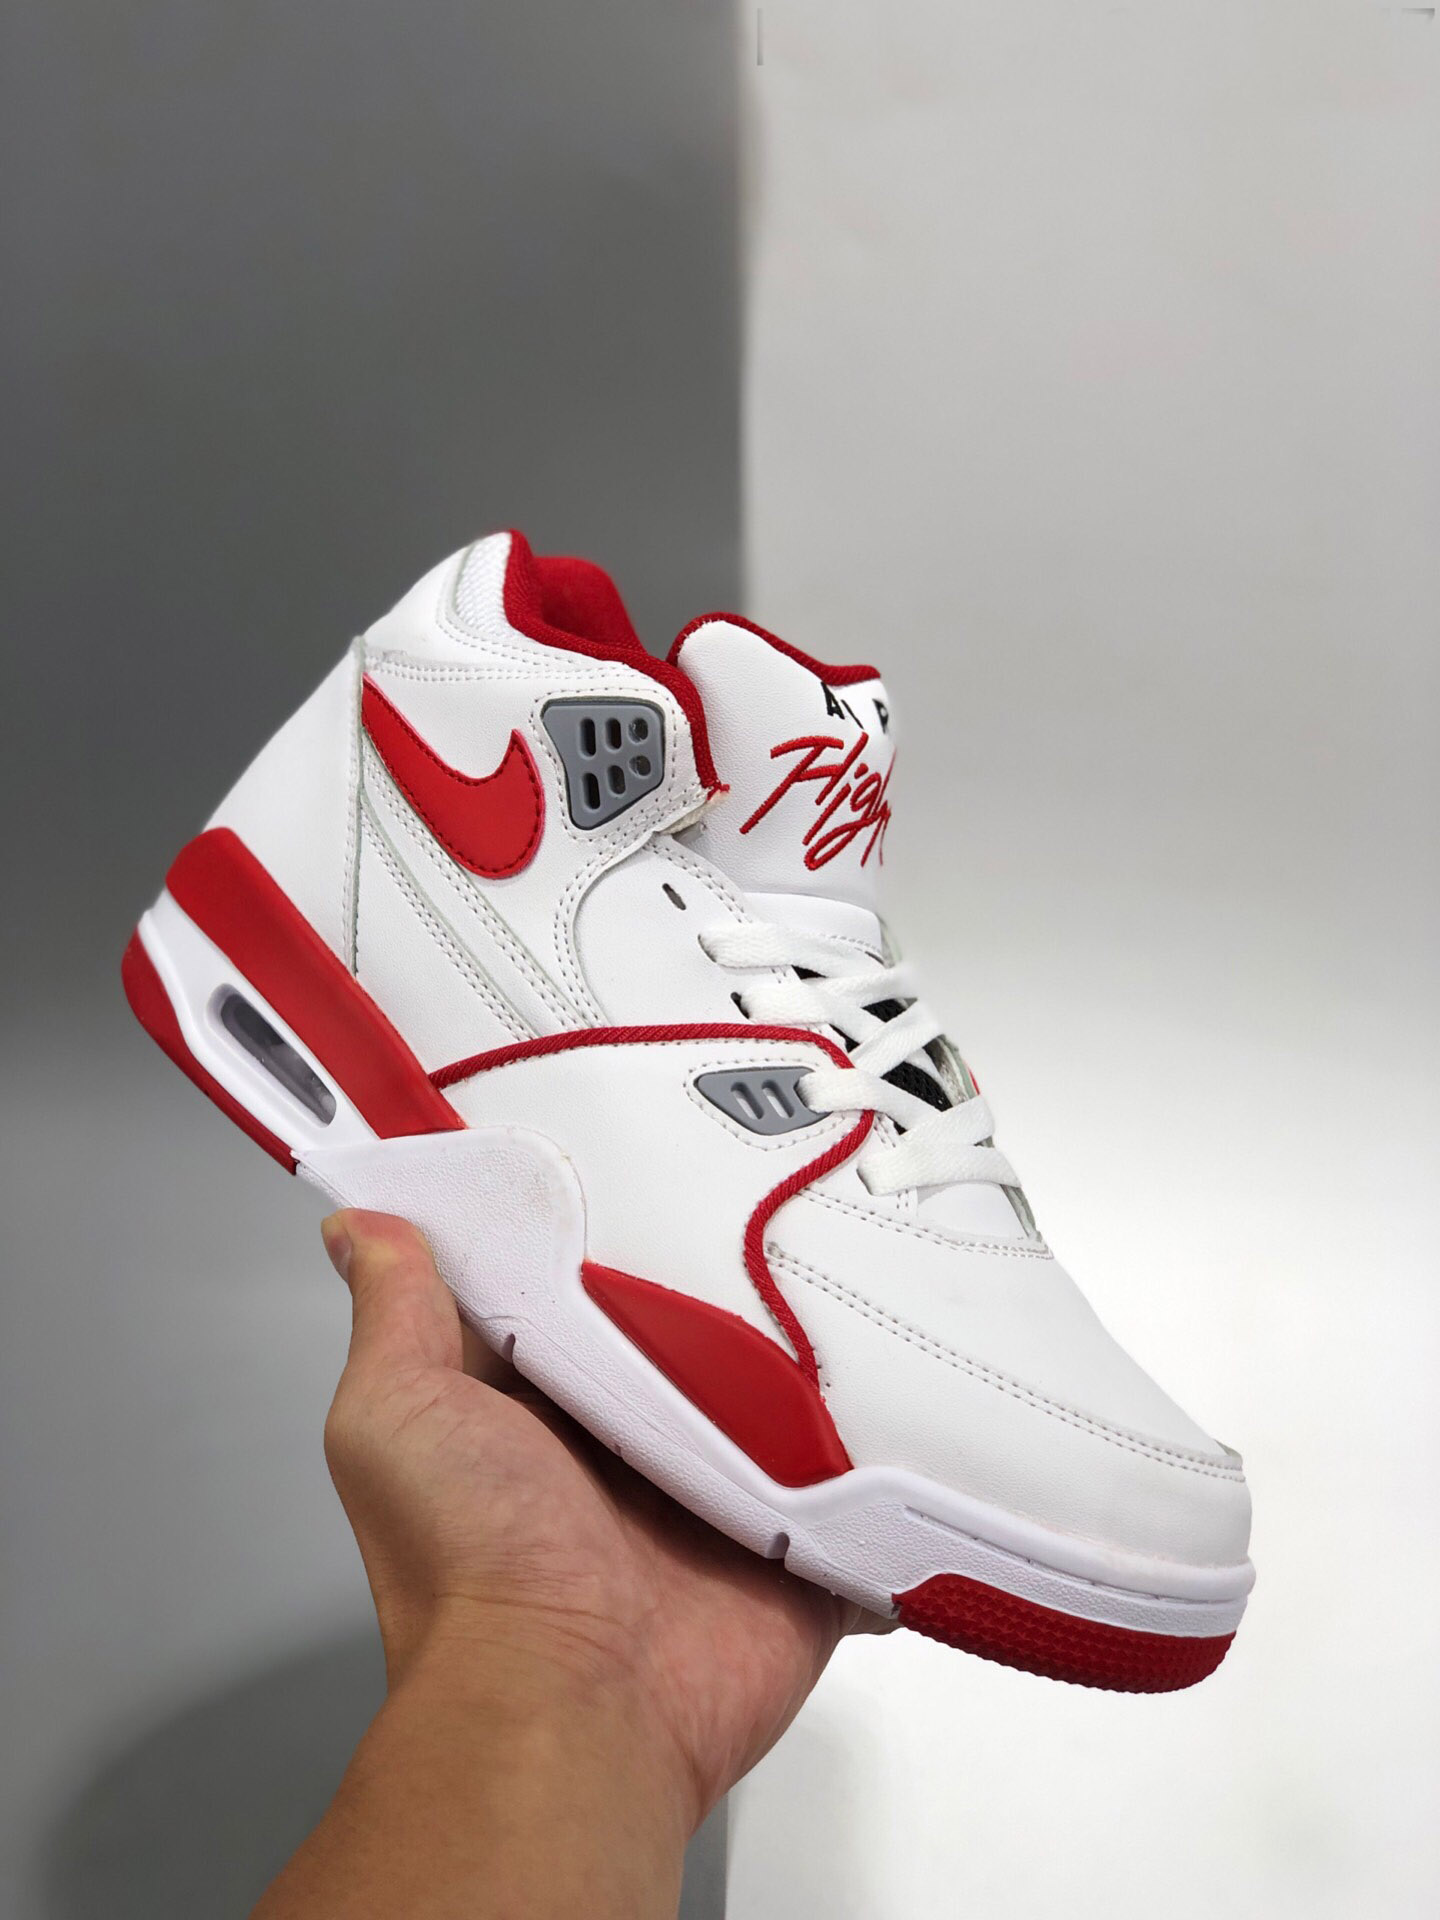 Nike Air Flight 89 White/University Red-Black For Sale – Sneaker Hello